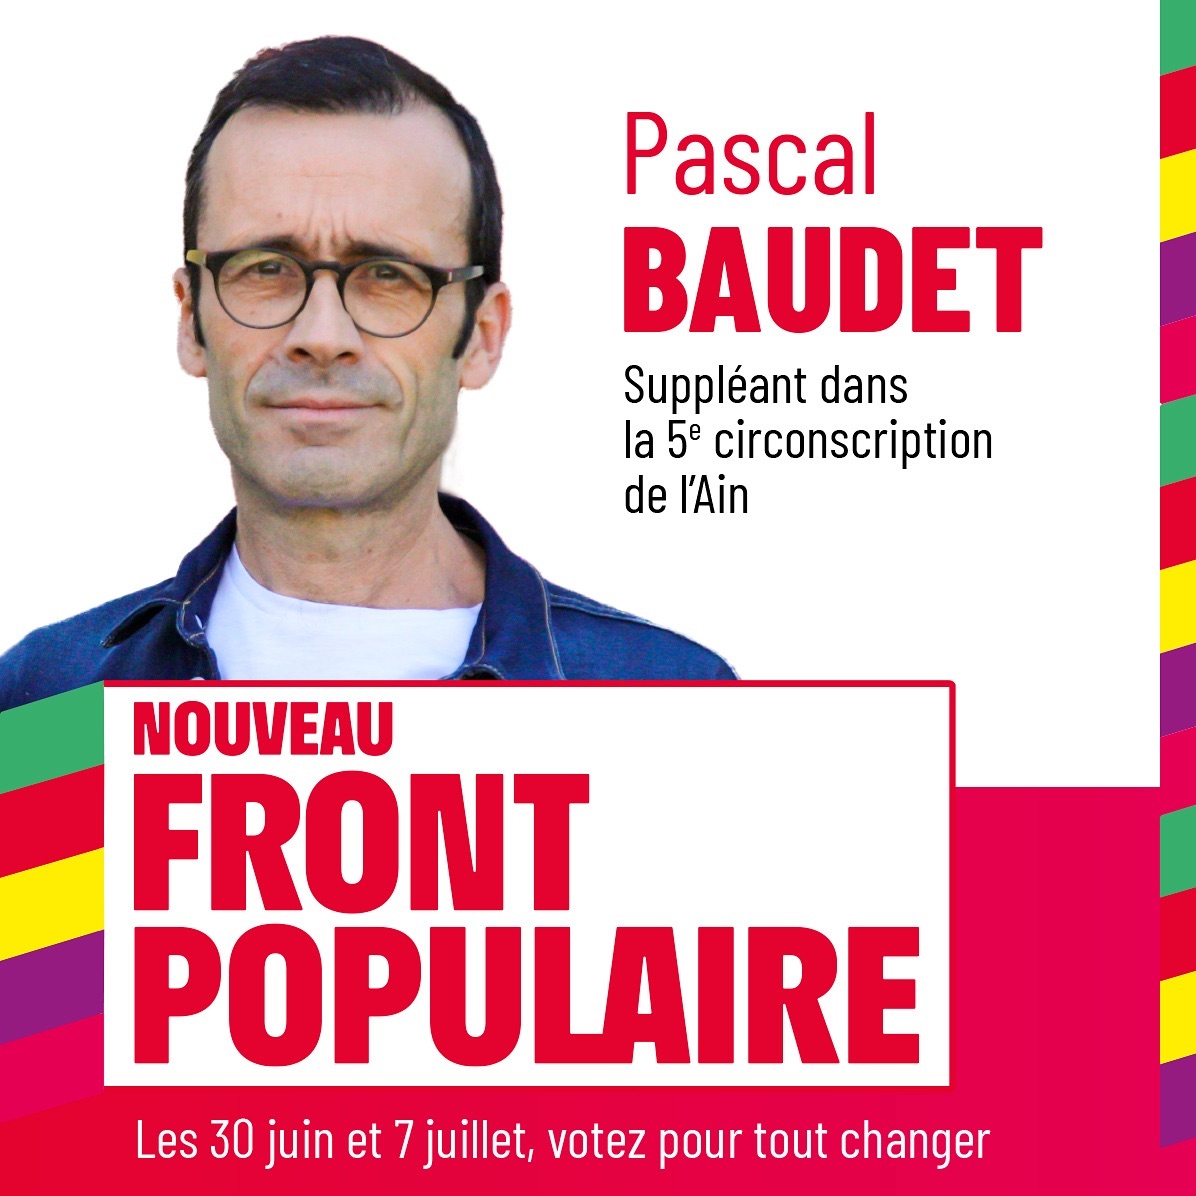 Pascal BAUDET, suppléant le Nouveau Front Populaire le 30 juin